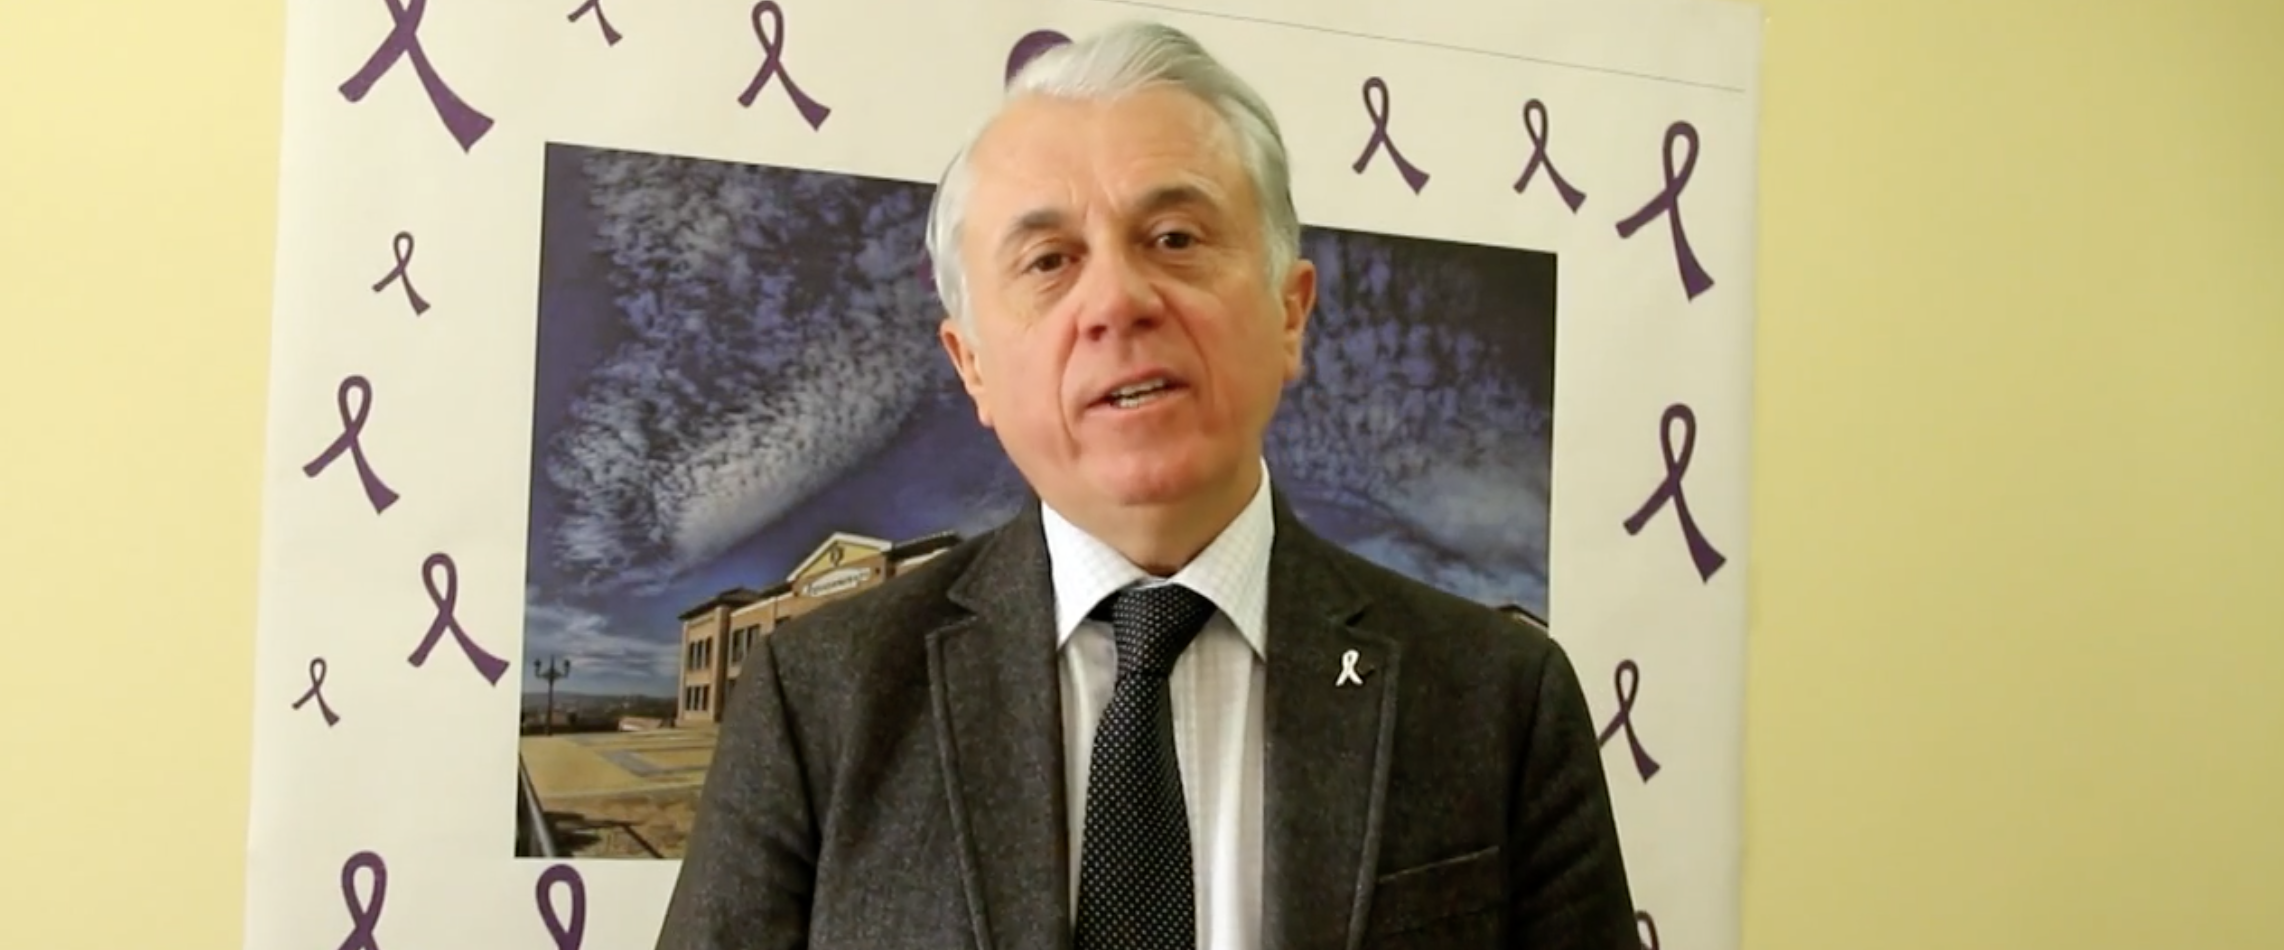 Manuel Altava, senador del PP. Youtube. 